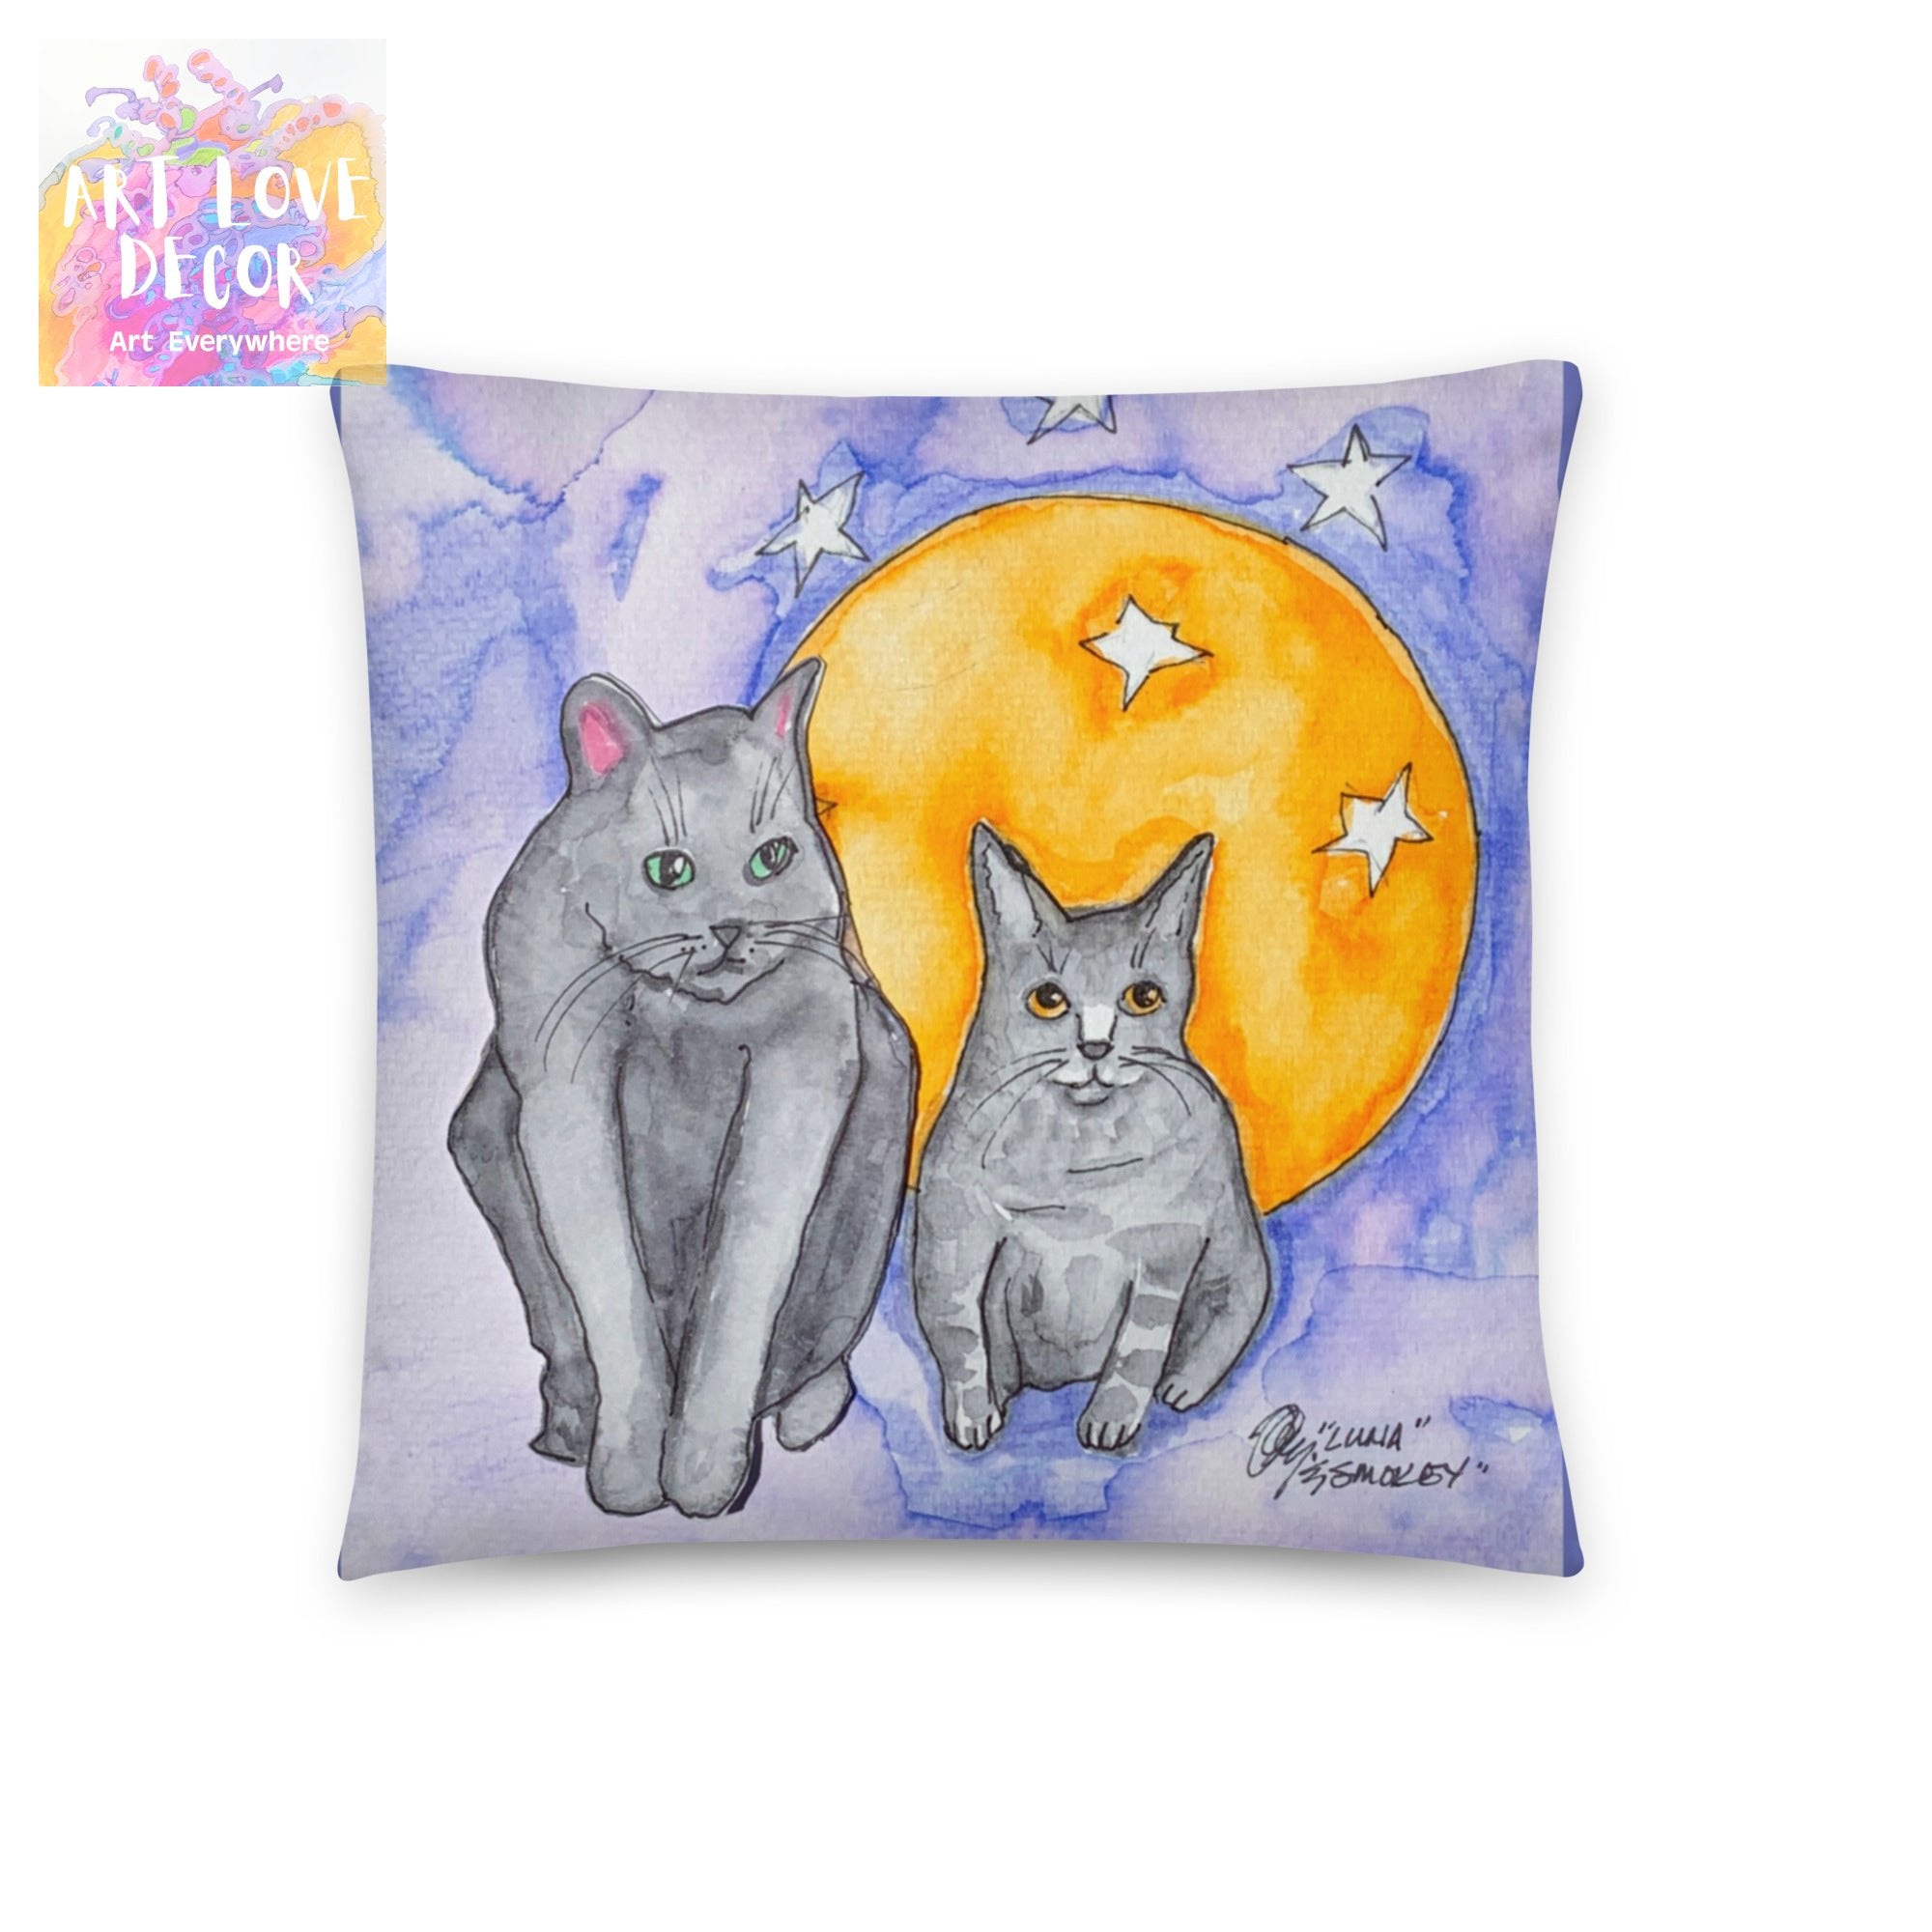 Moon Cats Pillow - Art Love Decor